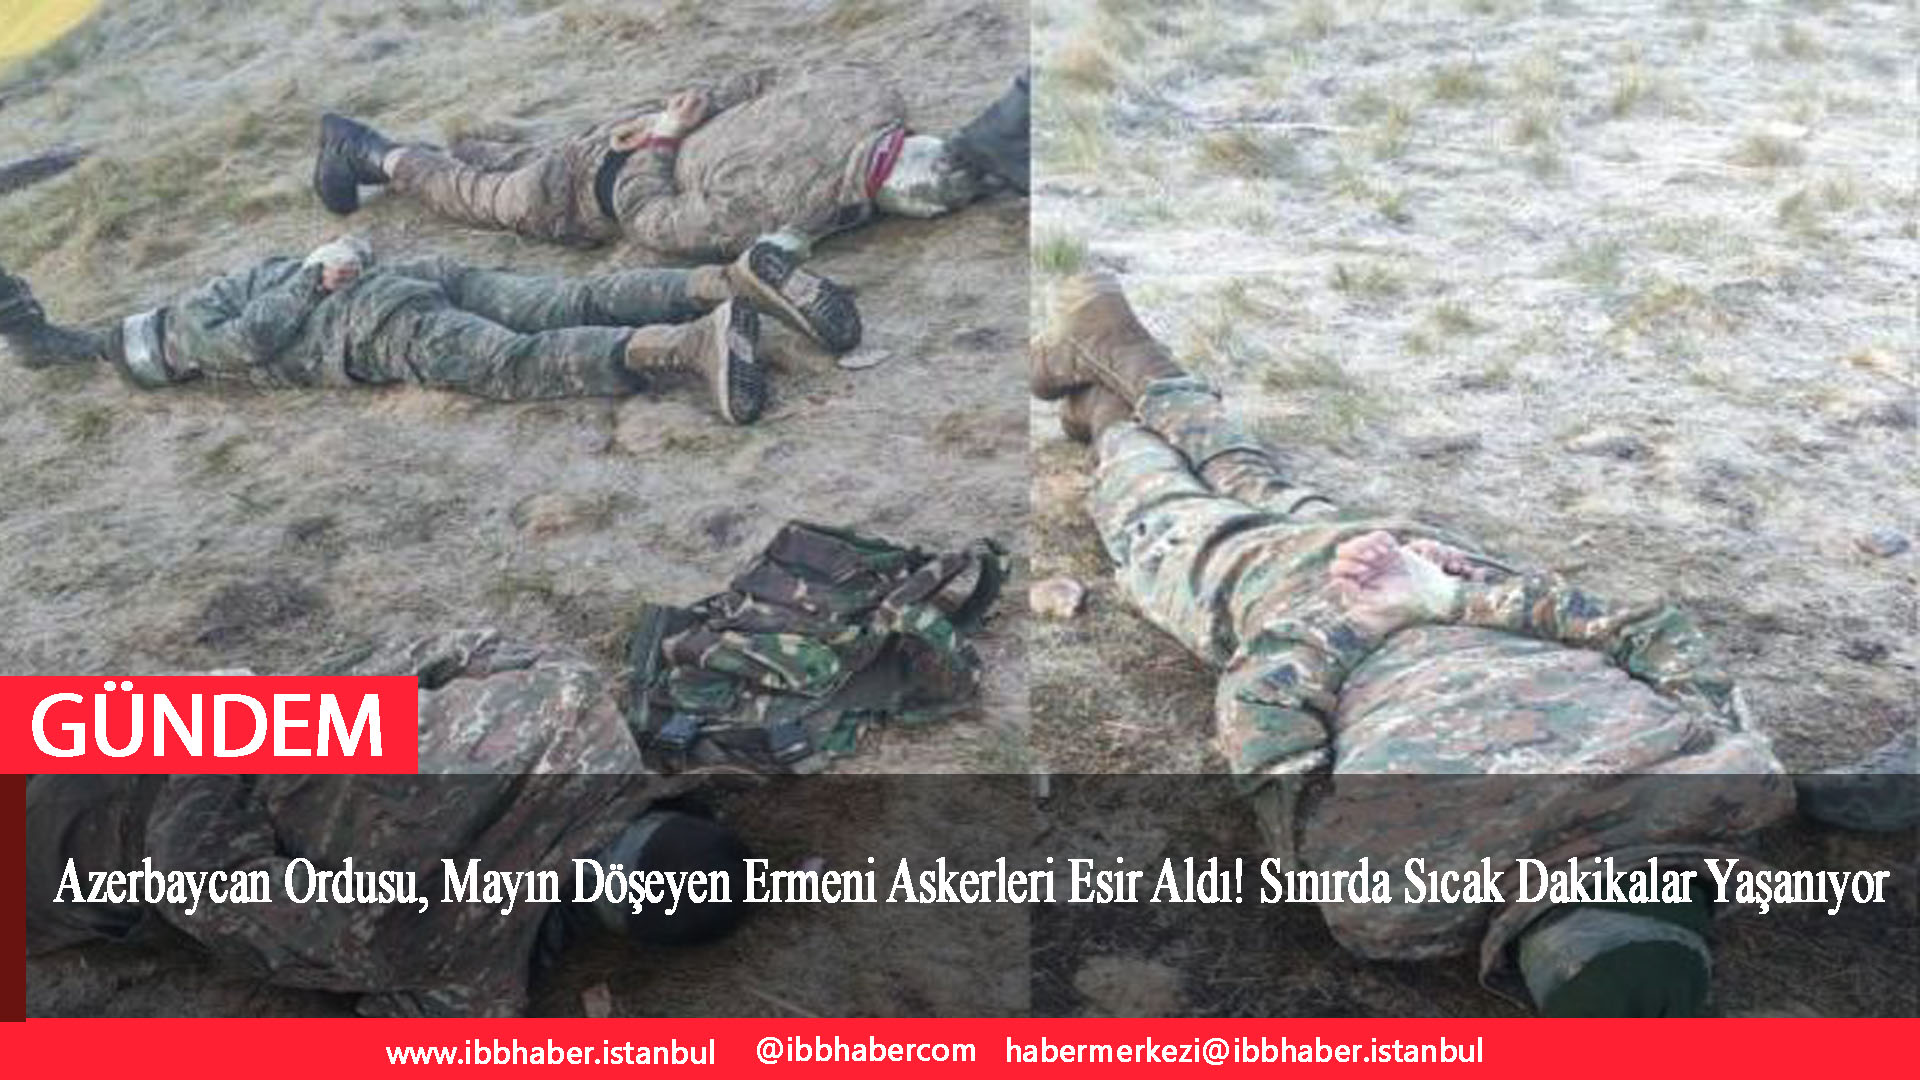 Azerbaycan Ordusu, Mayın Döşeyen Ermeni Askerleri Esir Aldı! Sınırda Sıcak Dakikalar Yaşanıyor